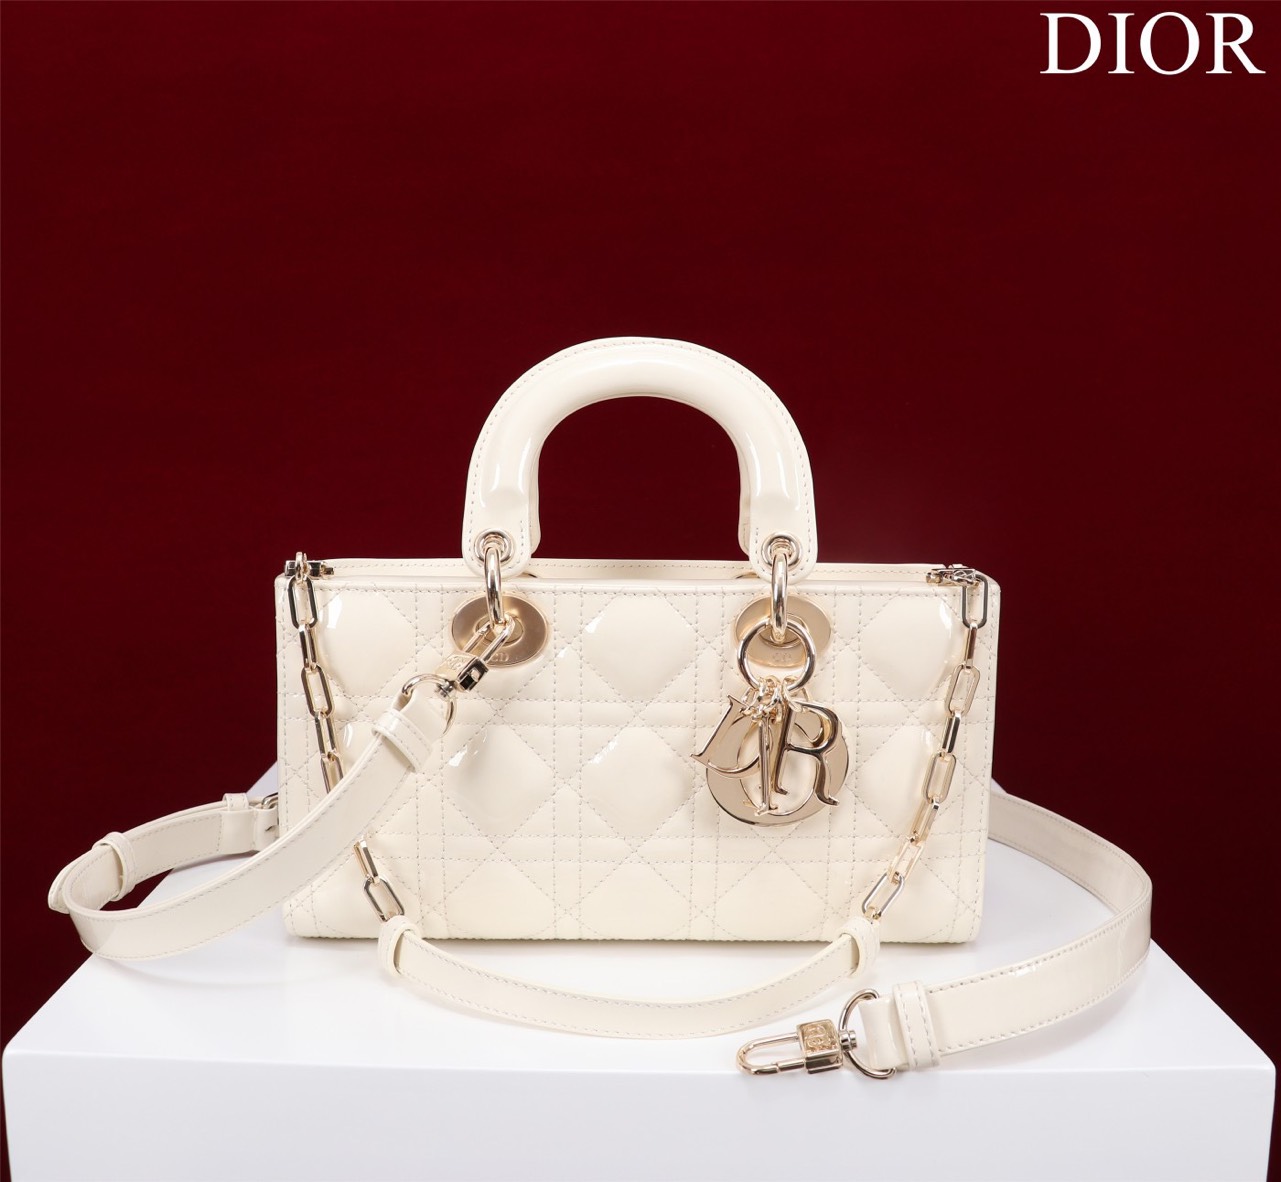 Túi Xách Dior Siêu Cấp Lady-Joy Nhiều Màu Da Bóng 2 Size